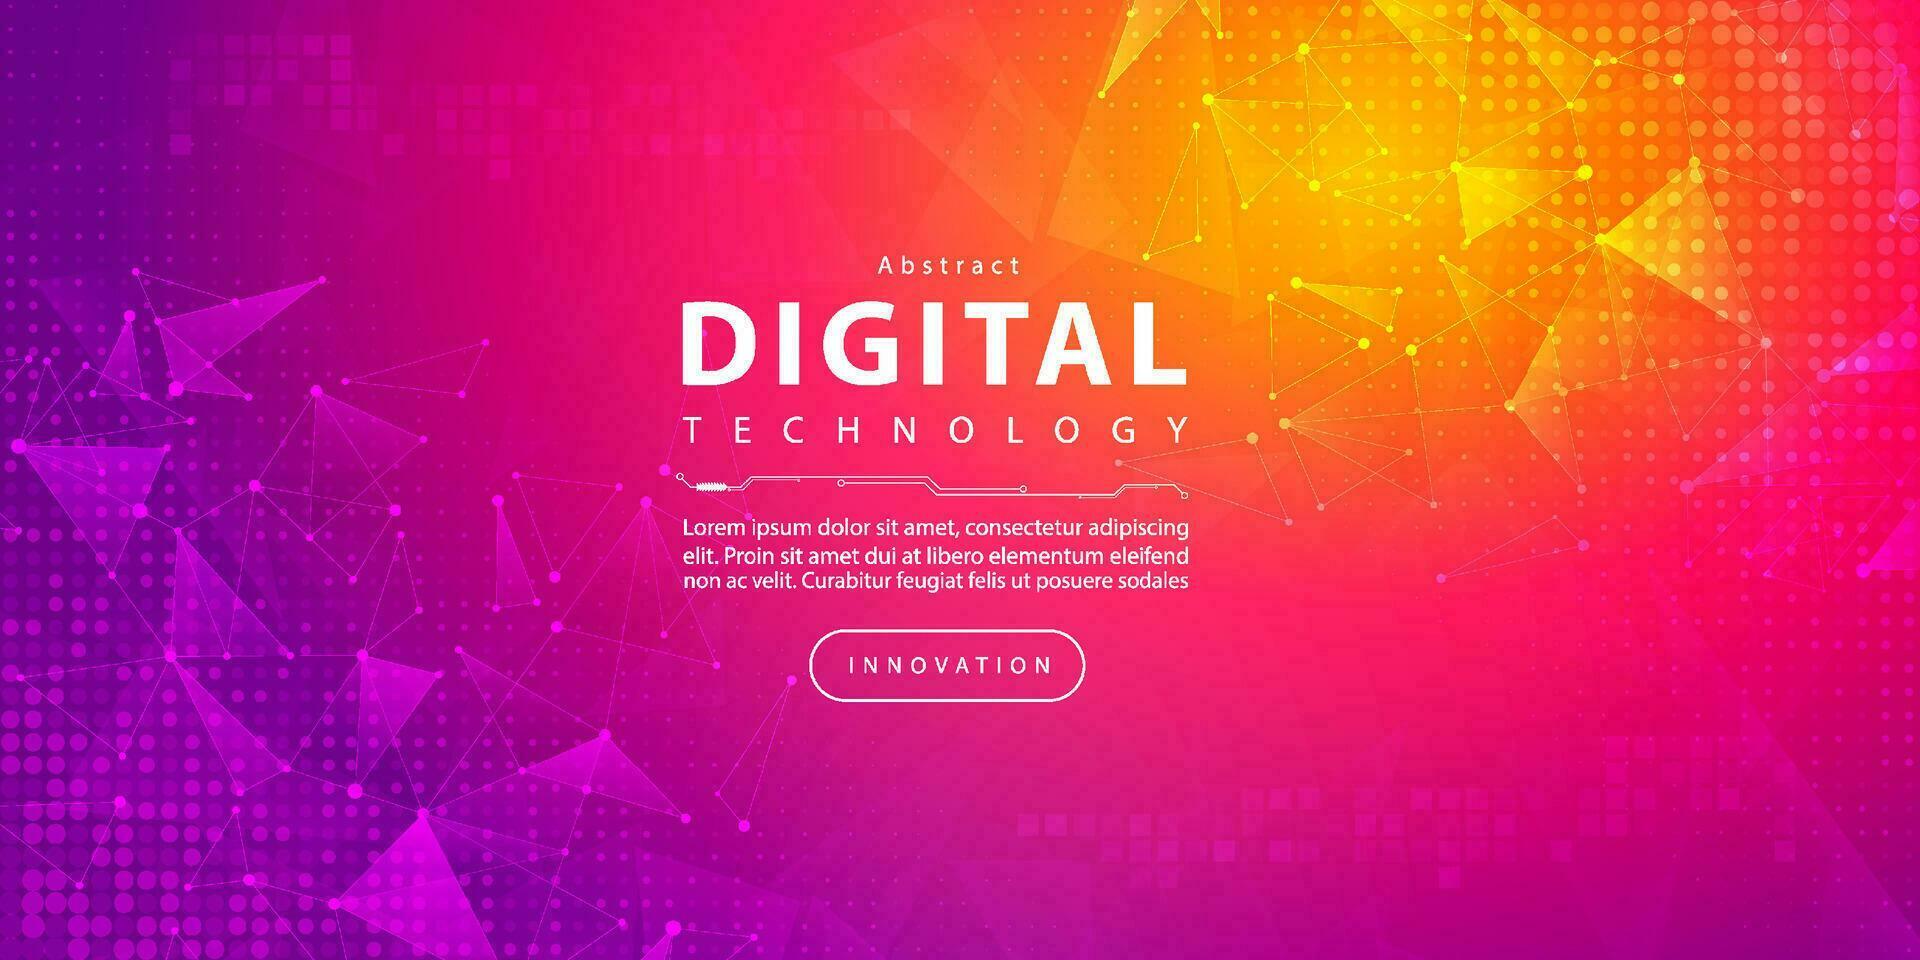 abstrakt digital teknologi trogen krets lila rosa bakgrund, cyber vetenskap teknik, innovation kommunikation framtida, ai stor data, internet nätverk förbindelse, moln hi-tech illustration vektor